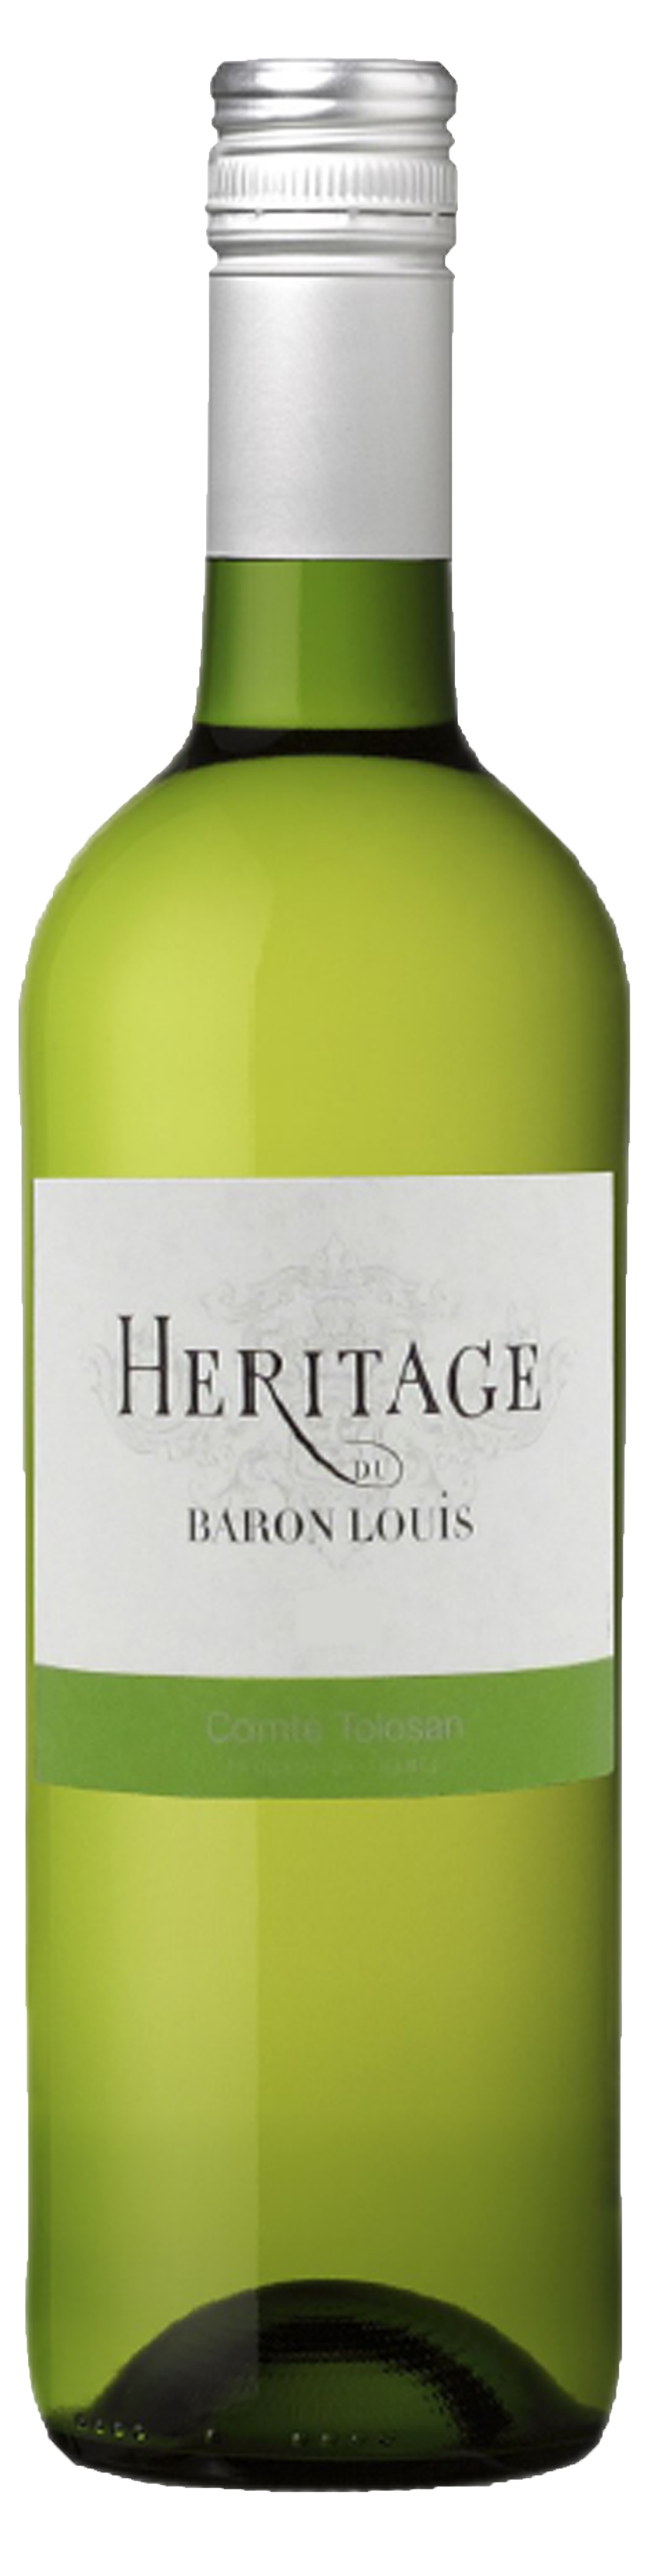 Bottle shot of 2016 Héritage de Baron Louis Blanc